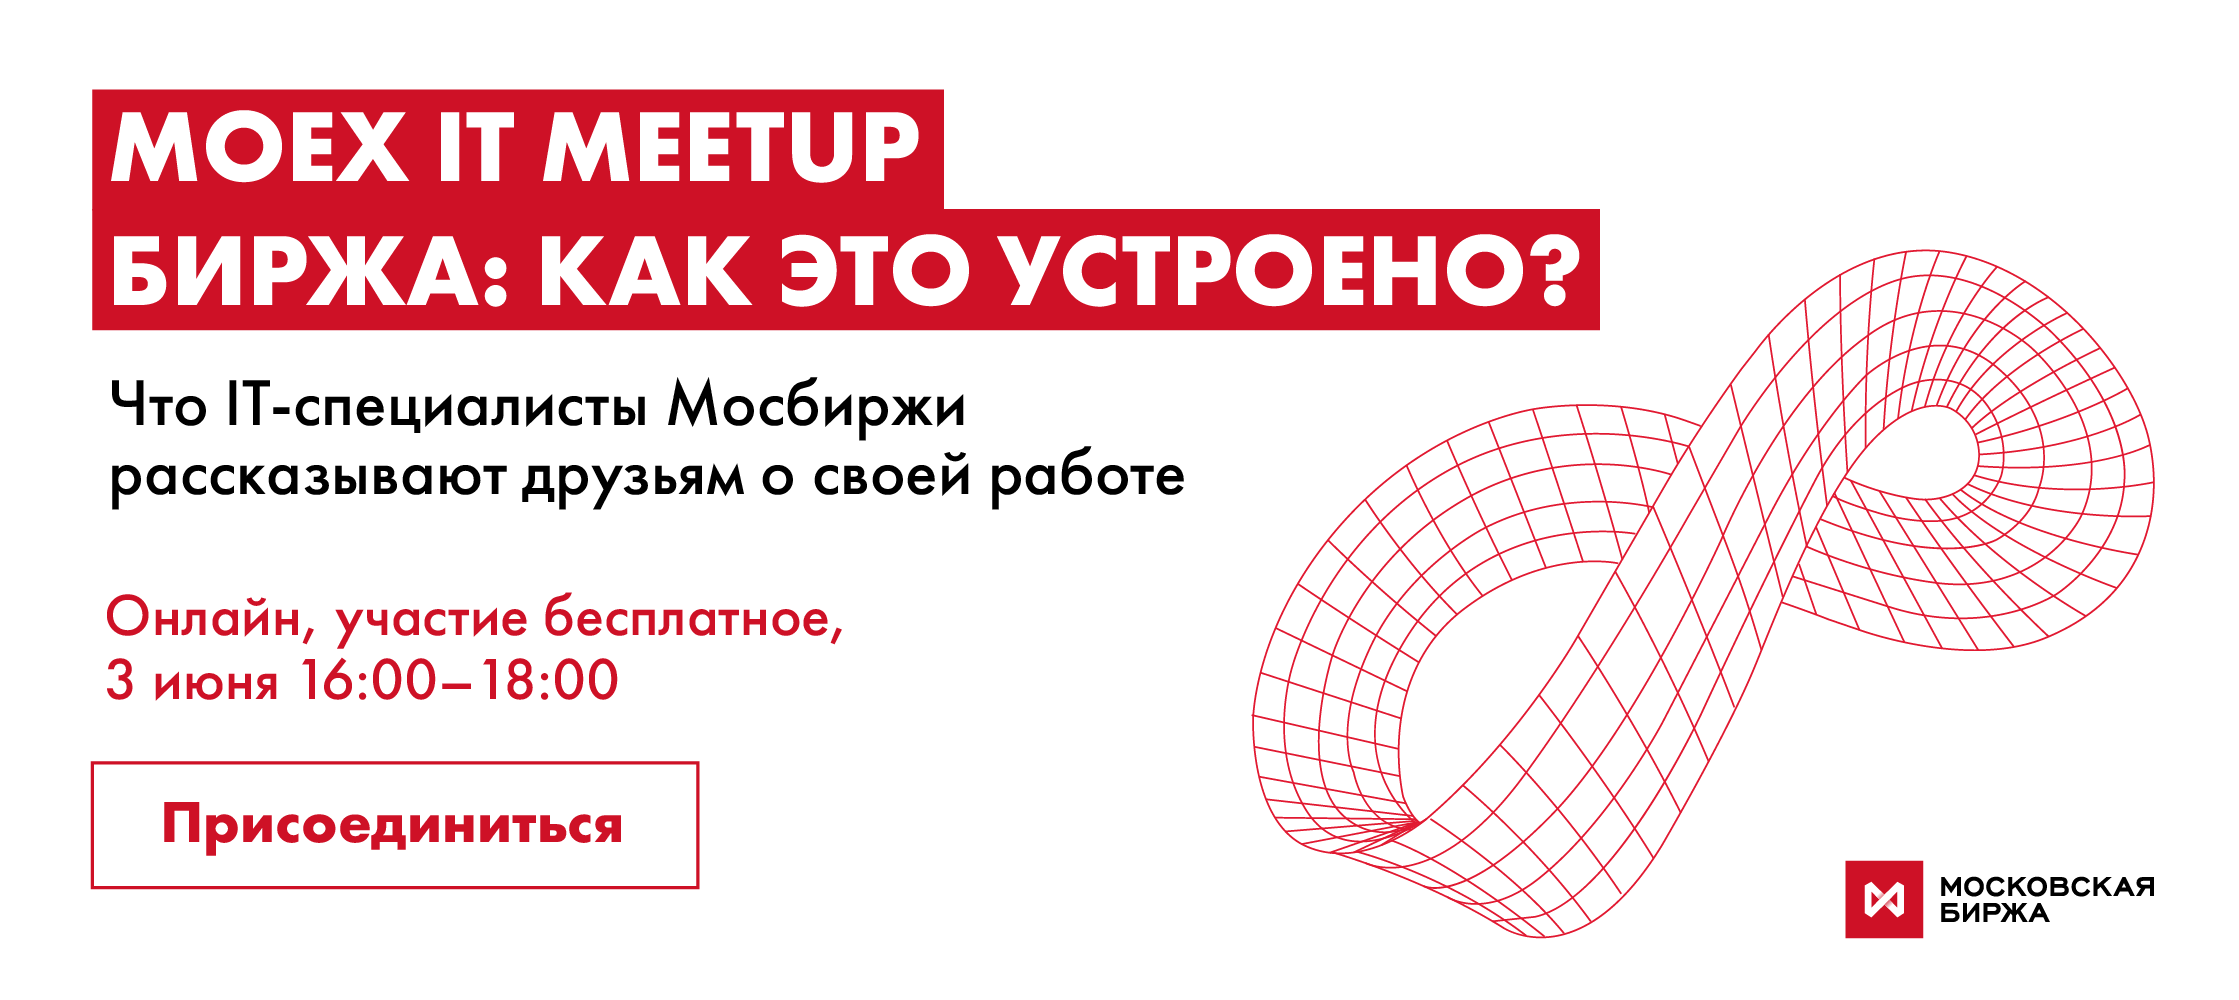 Онлайн-встреча MOEX IT Meetup